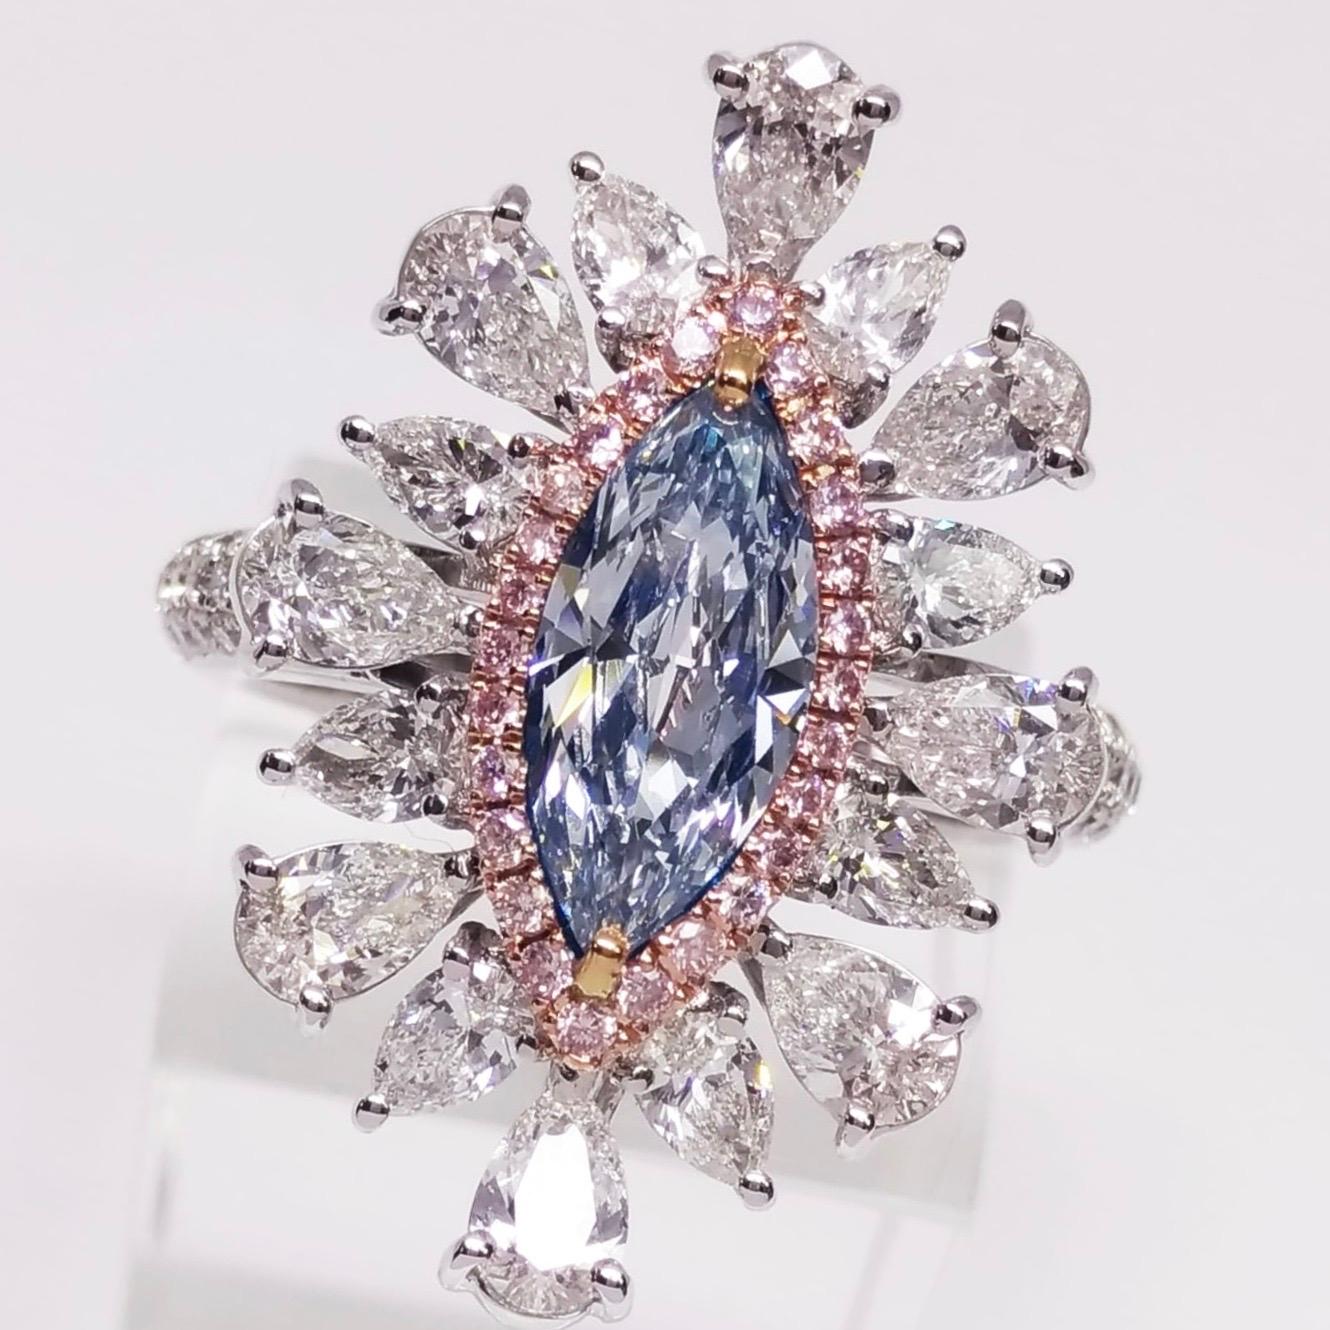 Präsentiert einen Gia-zertifizierten 1 Karat + natürlichen hellblauen Diamanten. Die Farbe ist ein reines Blau. Nach der Anfertigung des Rings und dem Einsetzen des Steins ist er mit einem ausgefallenen blauen Diamanten zu sehen. 
Dieses Stück wurde